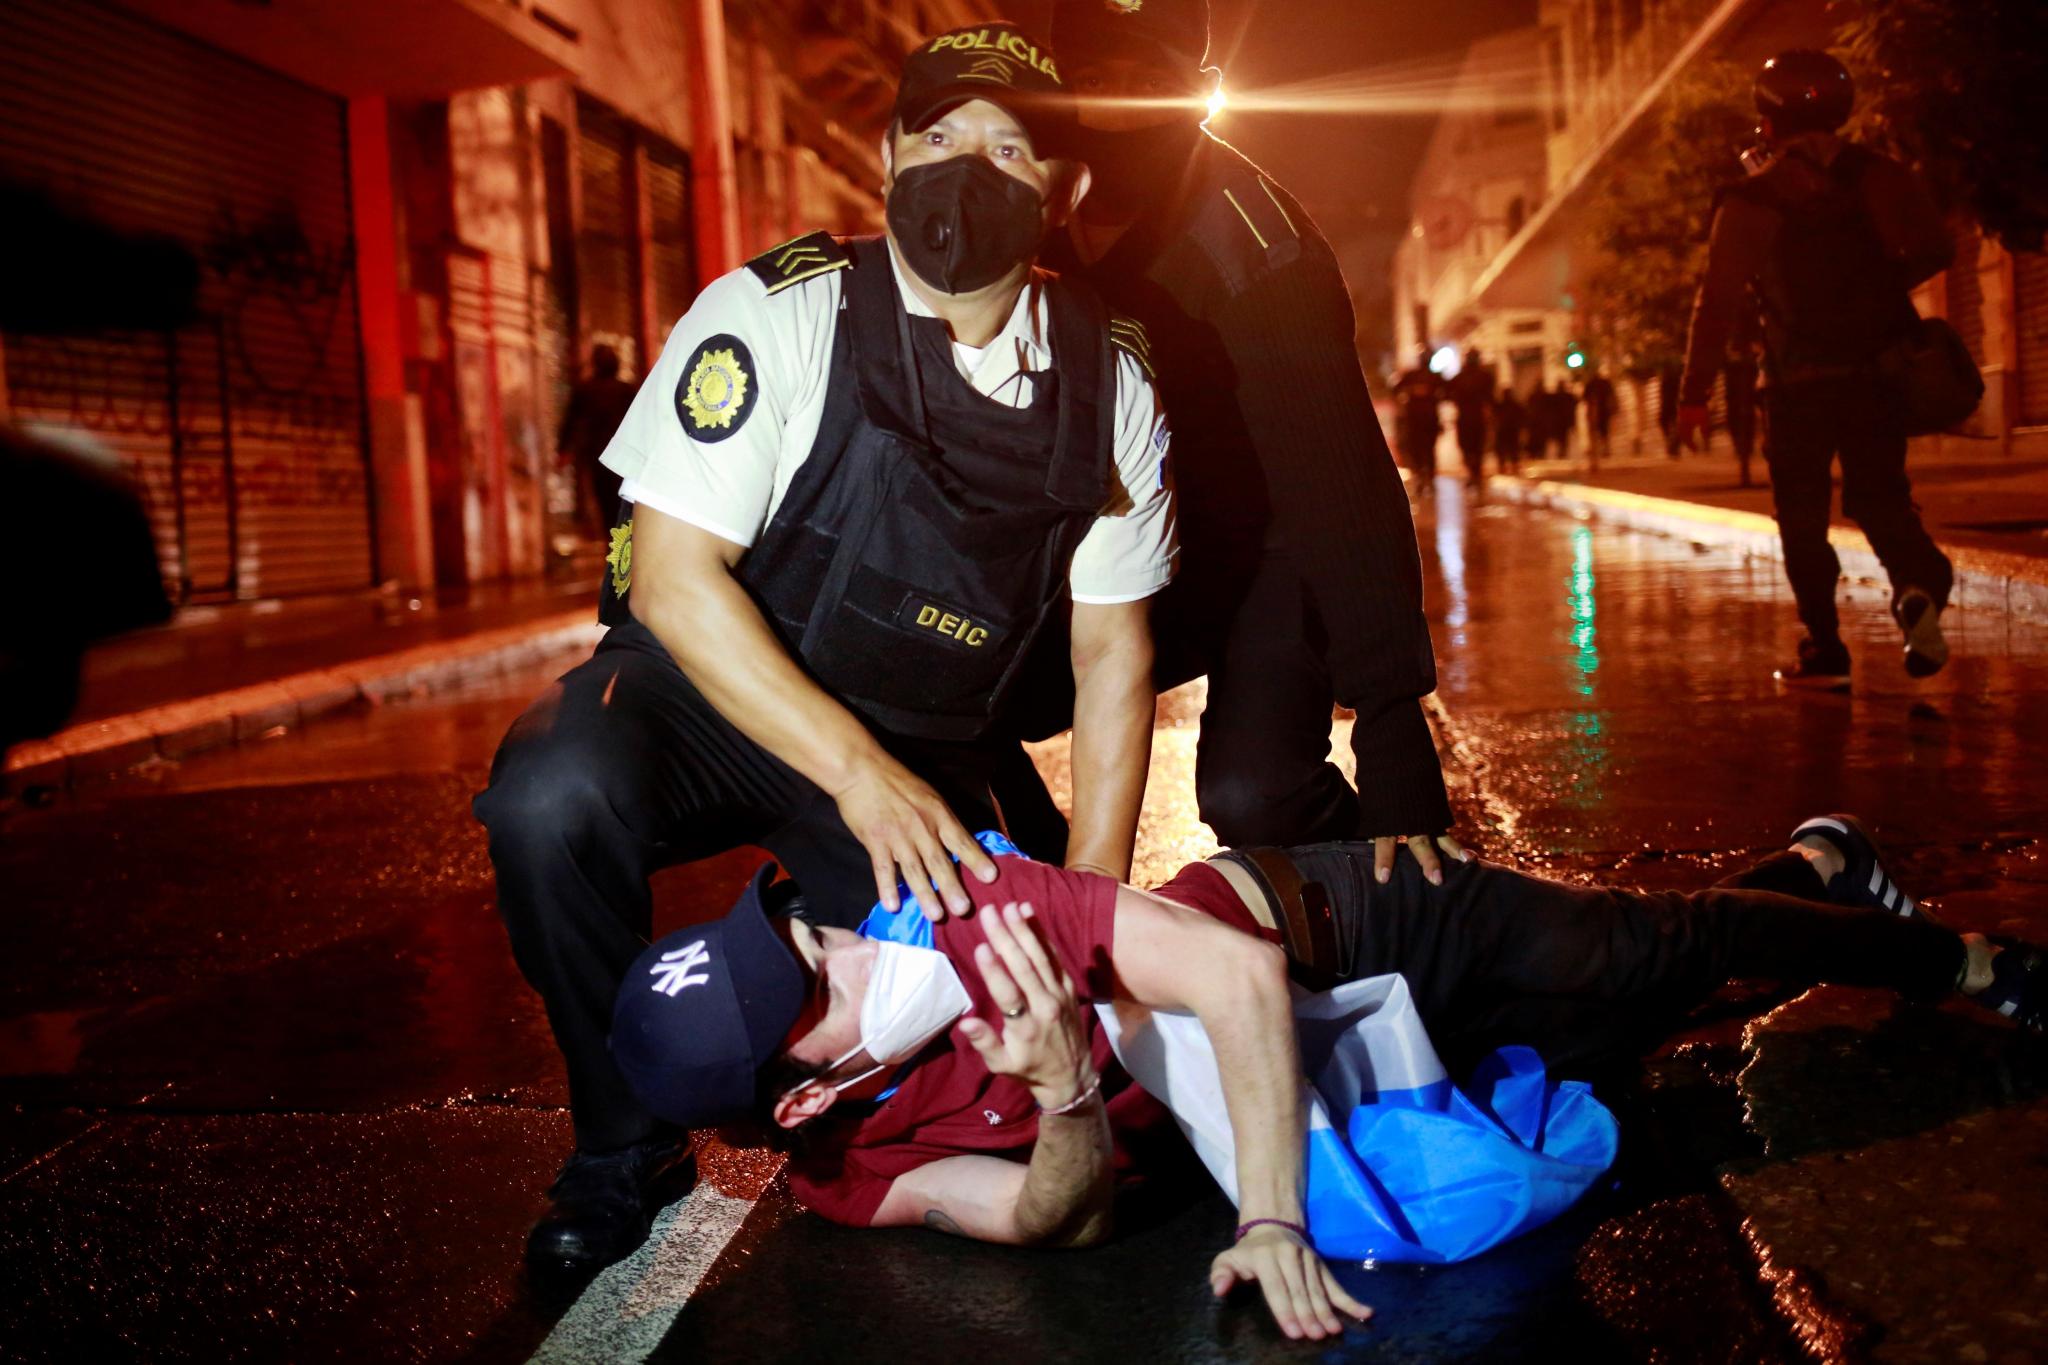 La policía captura a un manifestante el 21 de noviembre del 2020. (Foto Prensa Libre: EFE)